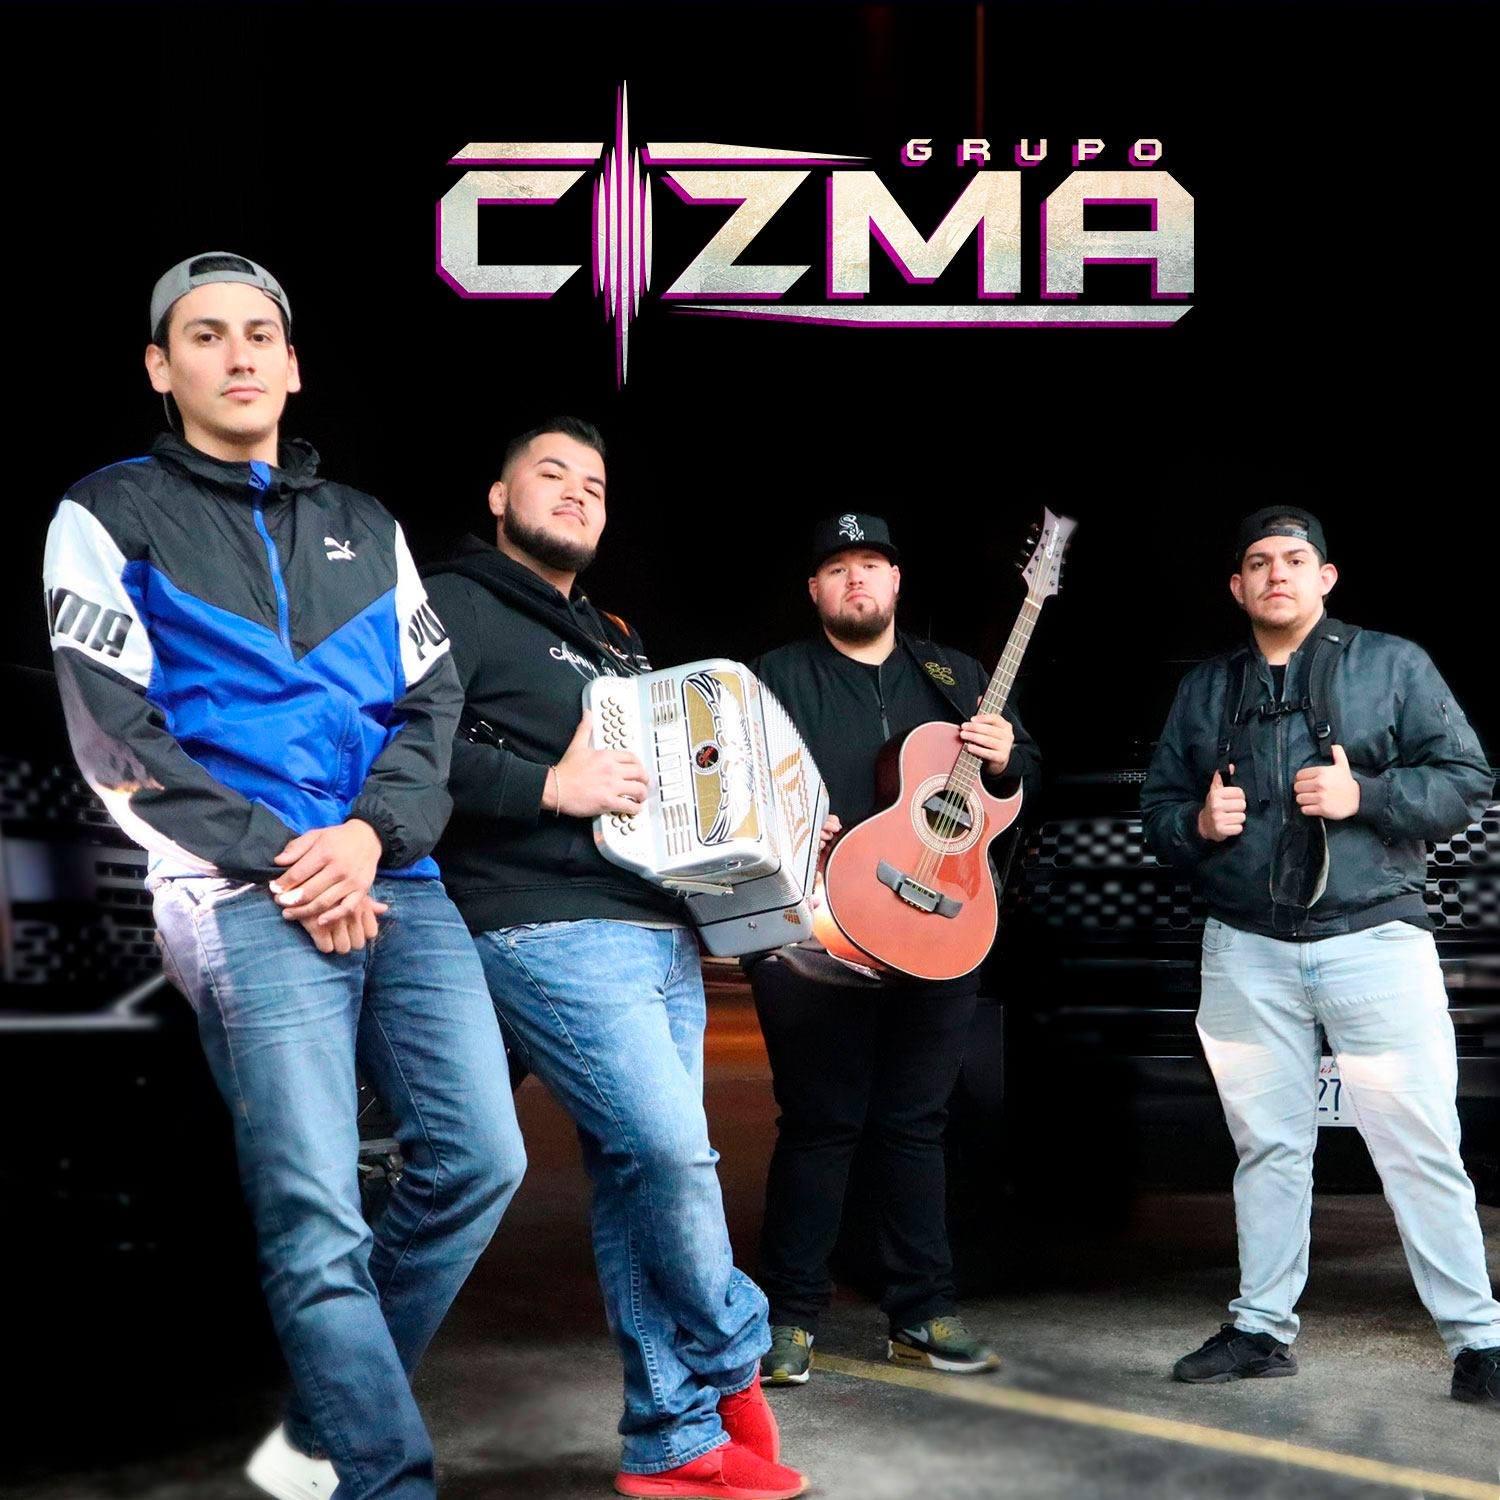 Grupo Cizma